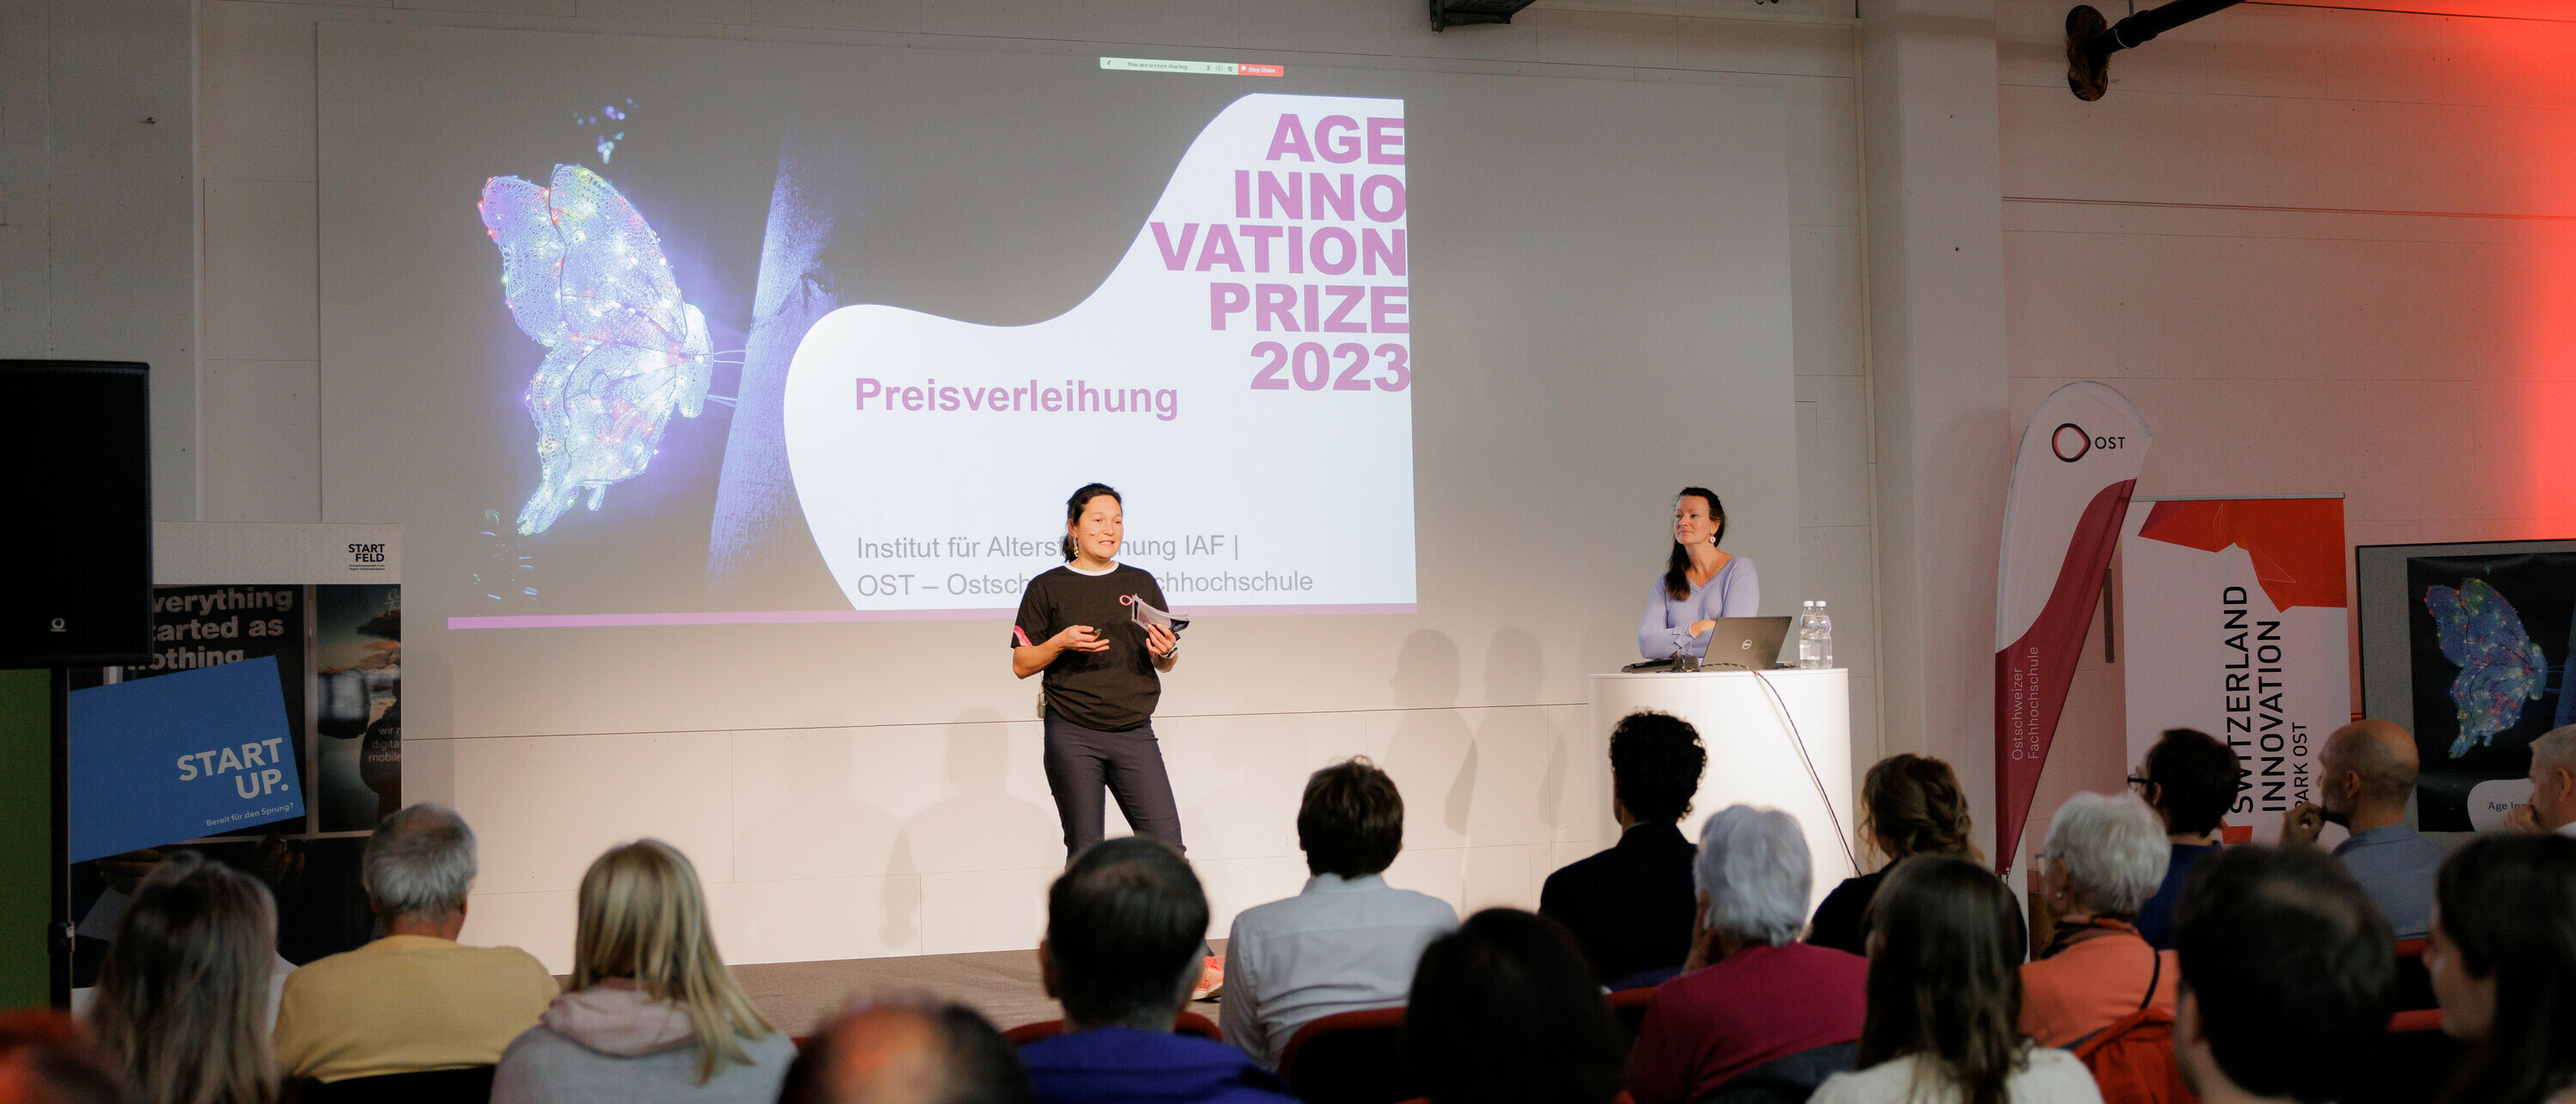 Preisverleihung Age Innovation Prize 2023